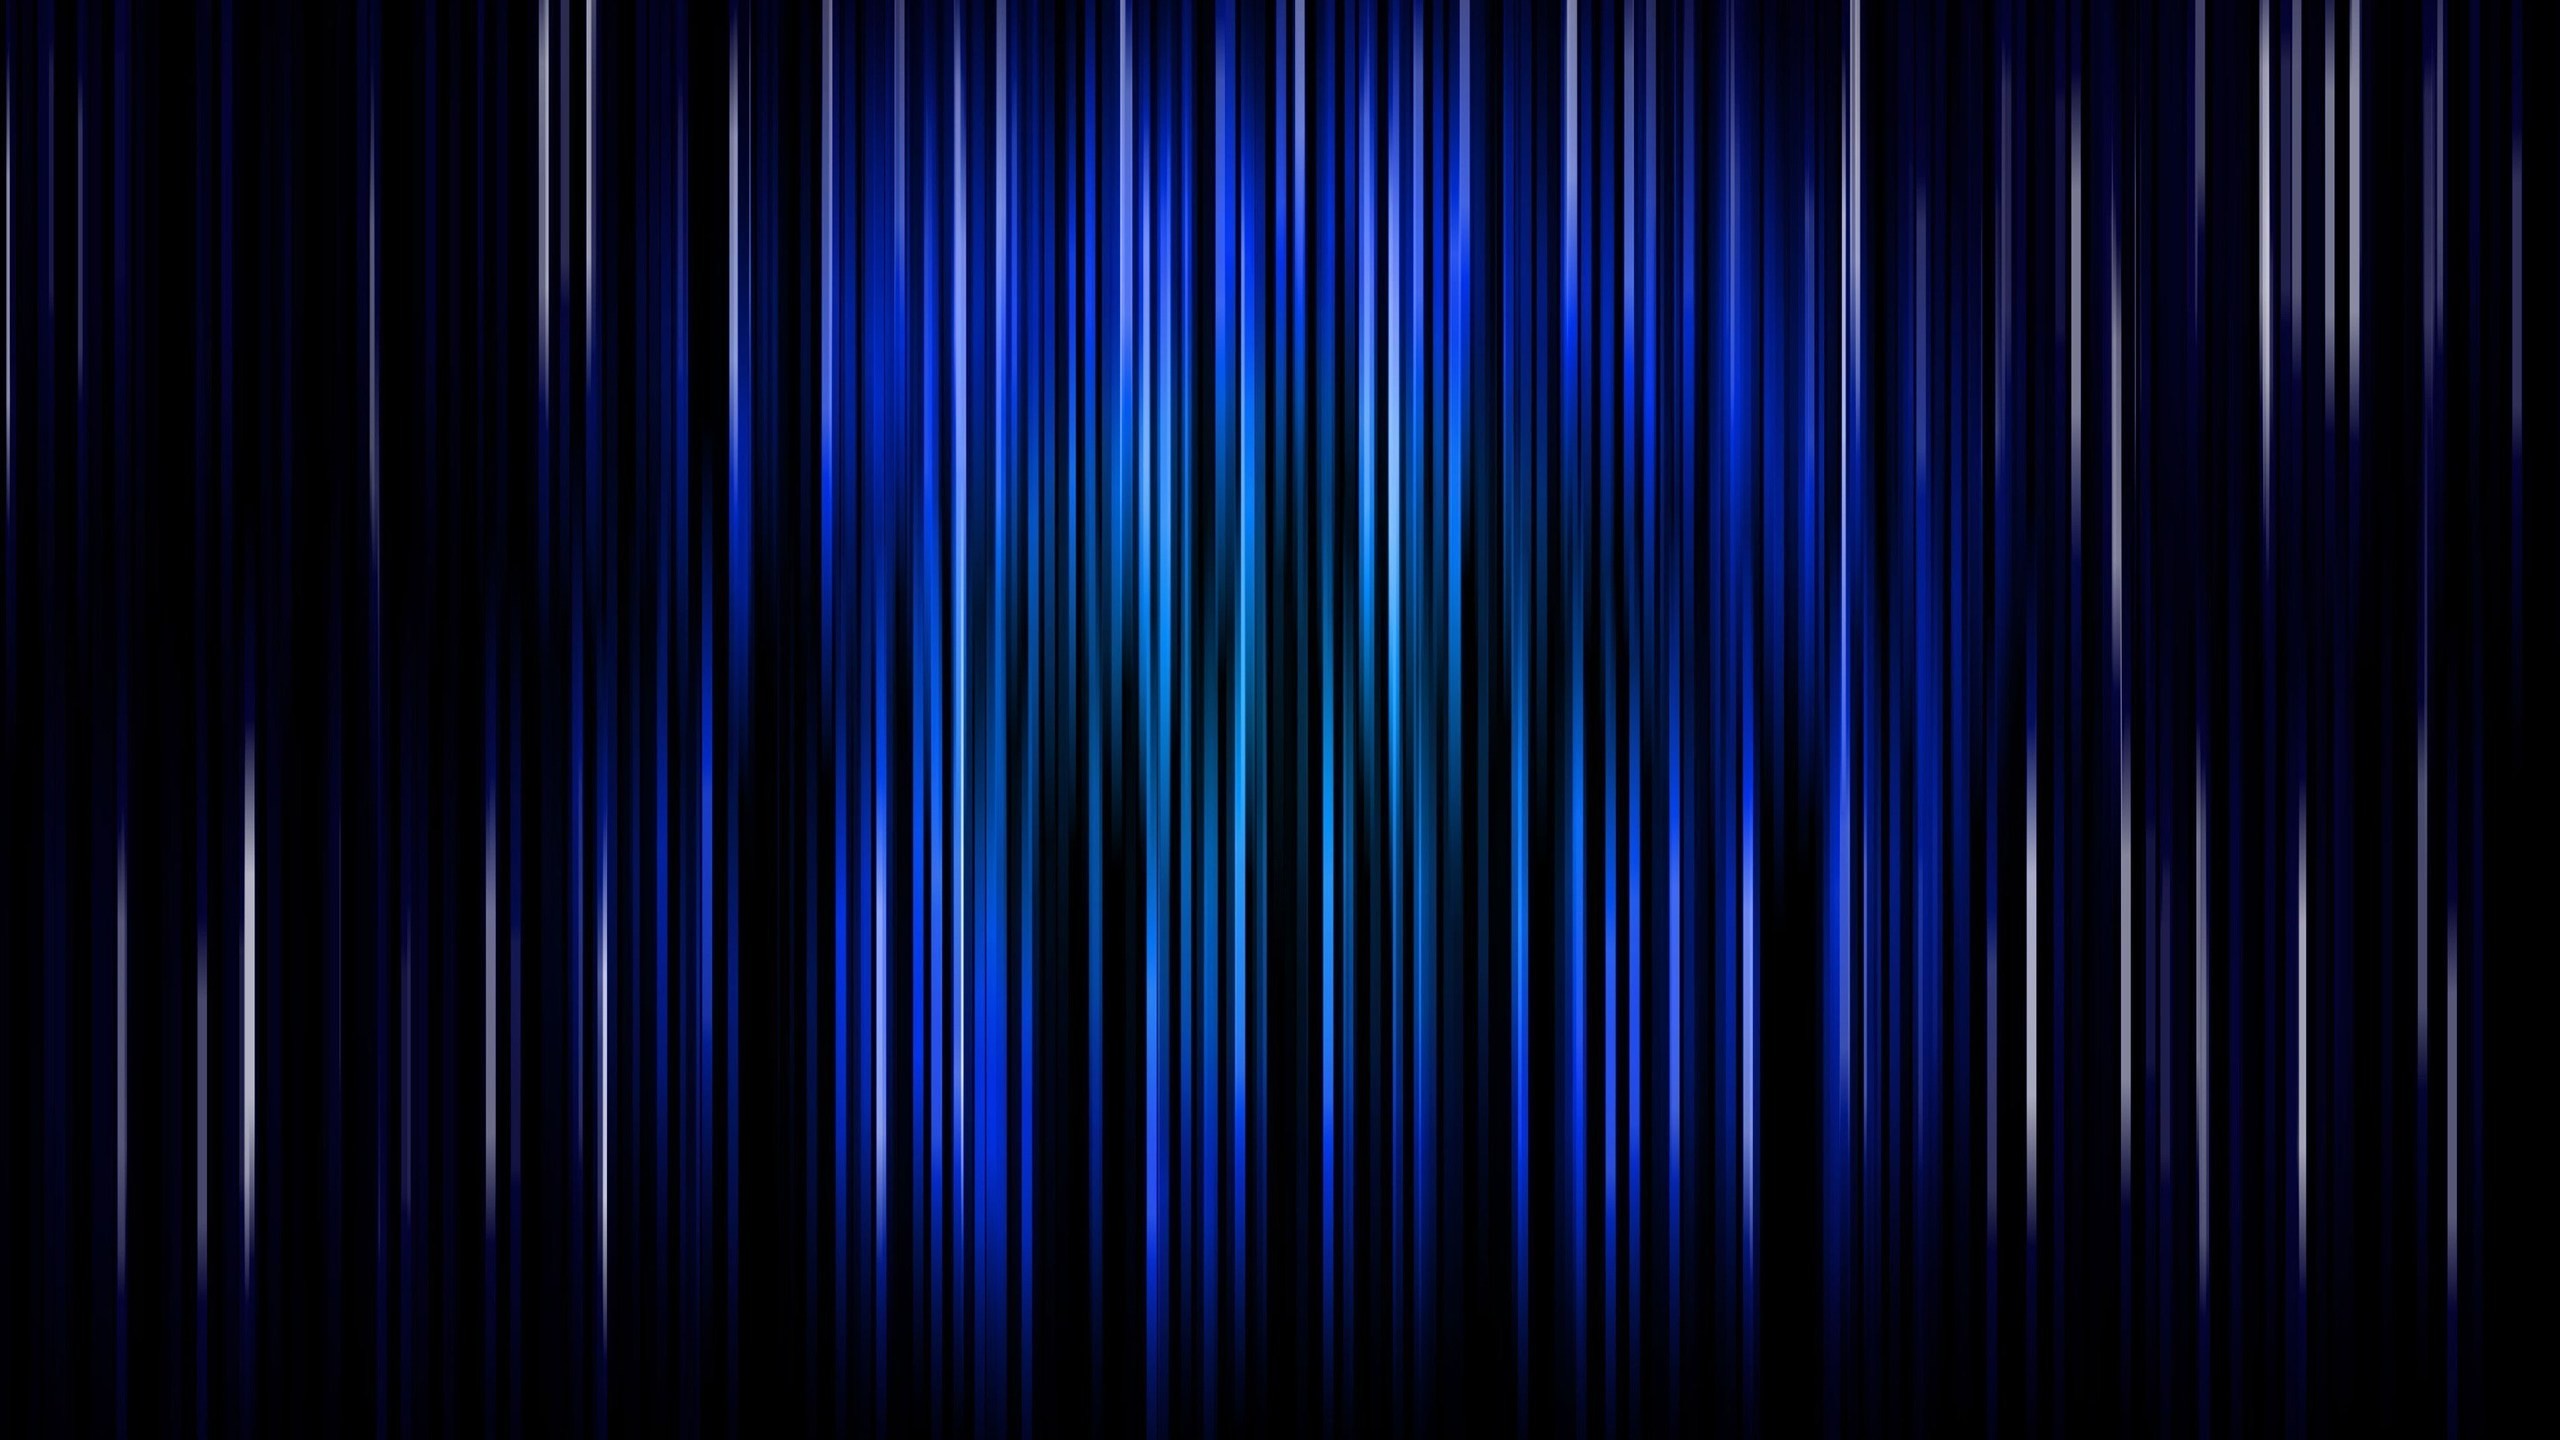 pixel art wallpaper,blue,black,electric blue,purple,cobalt blue